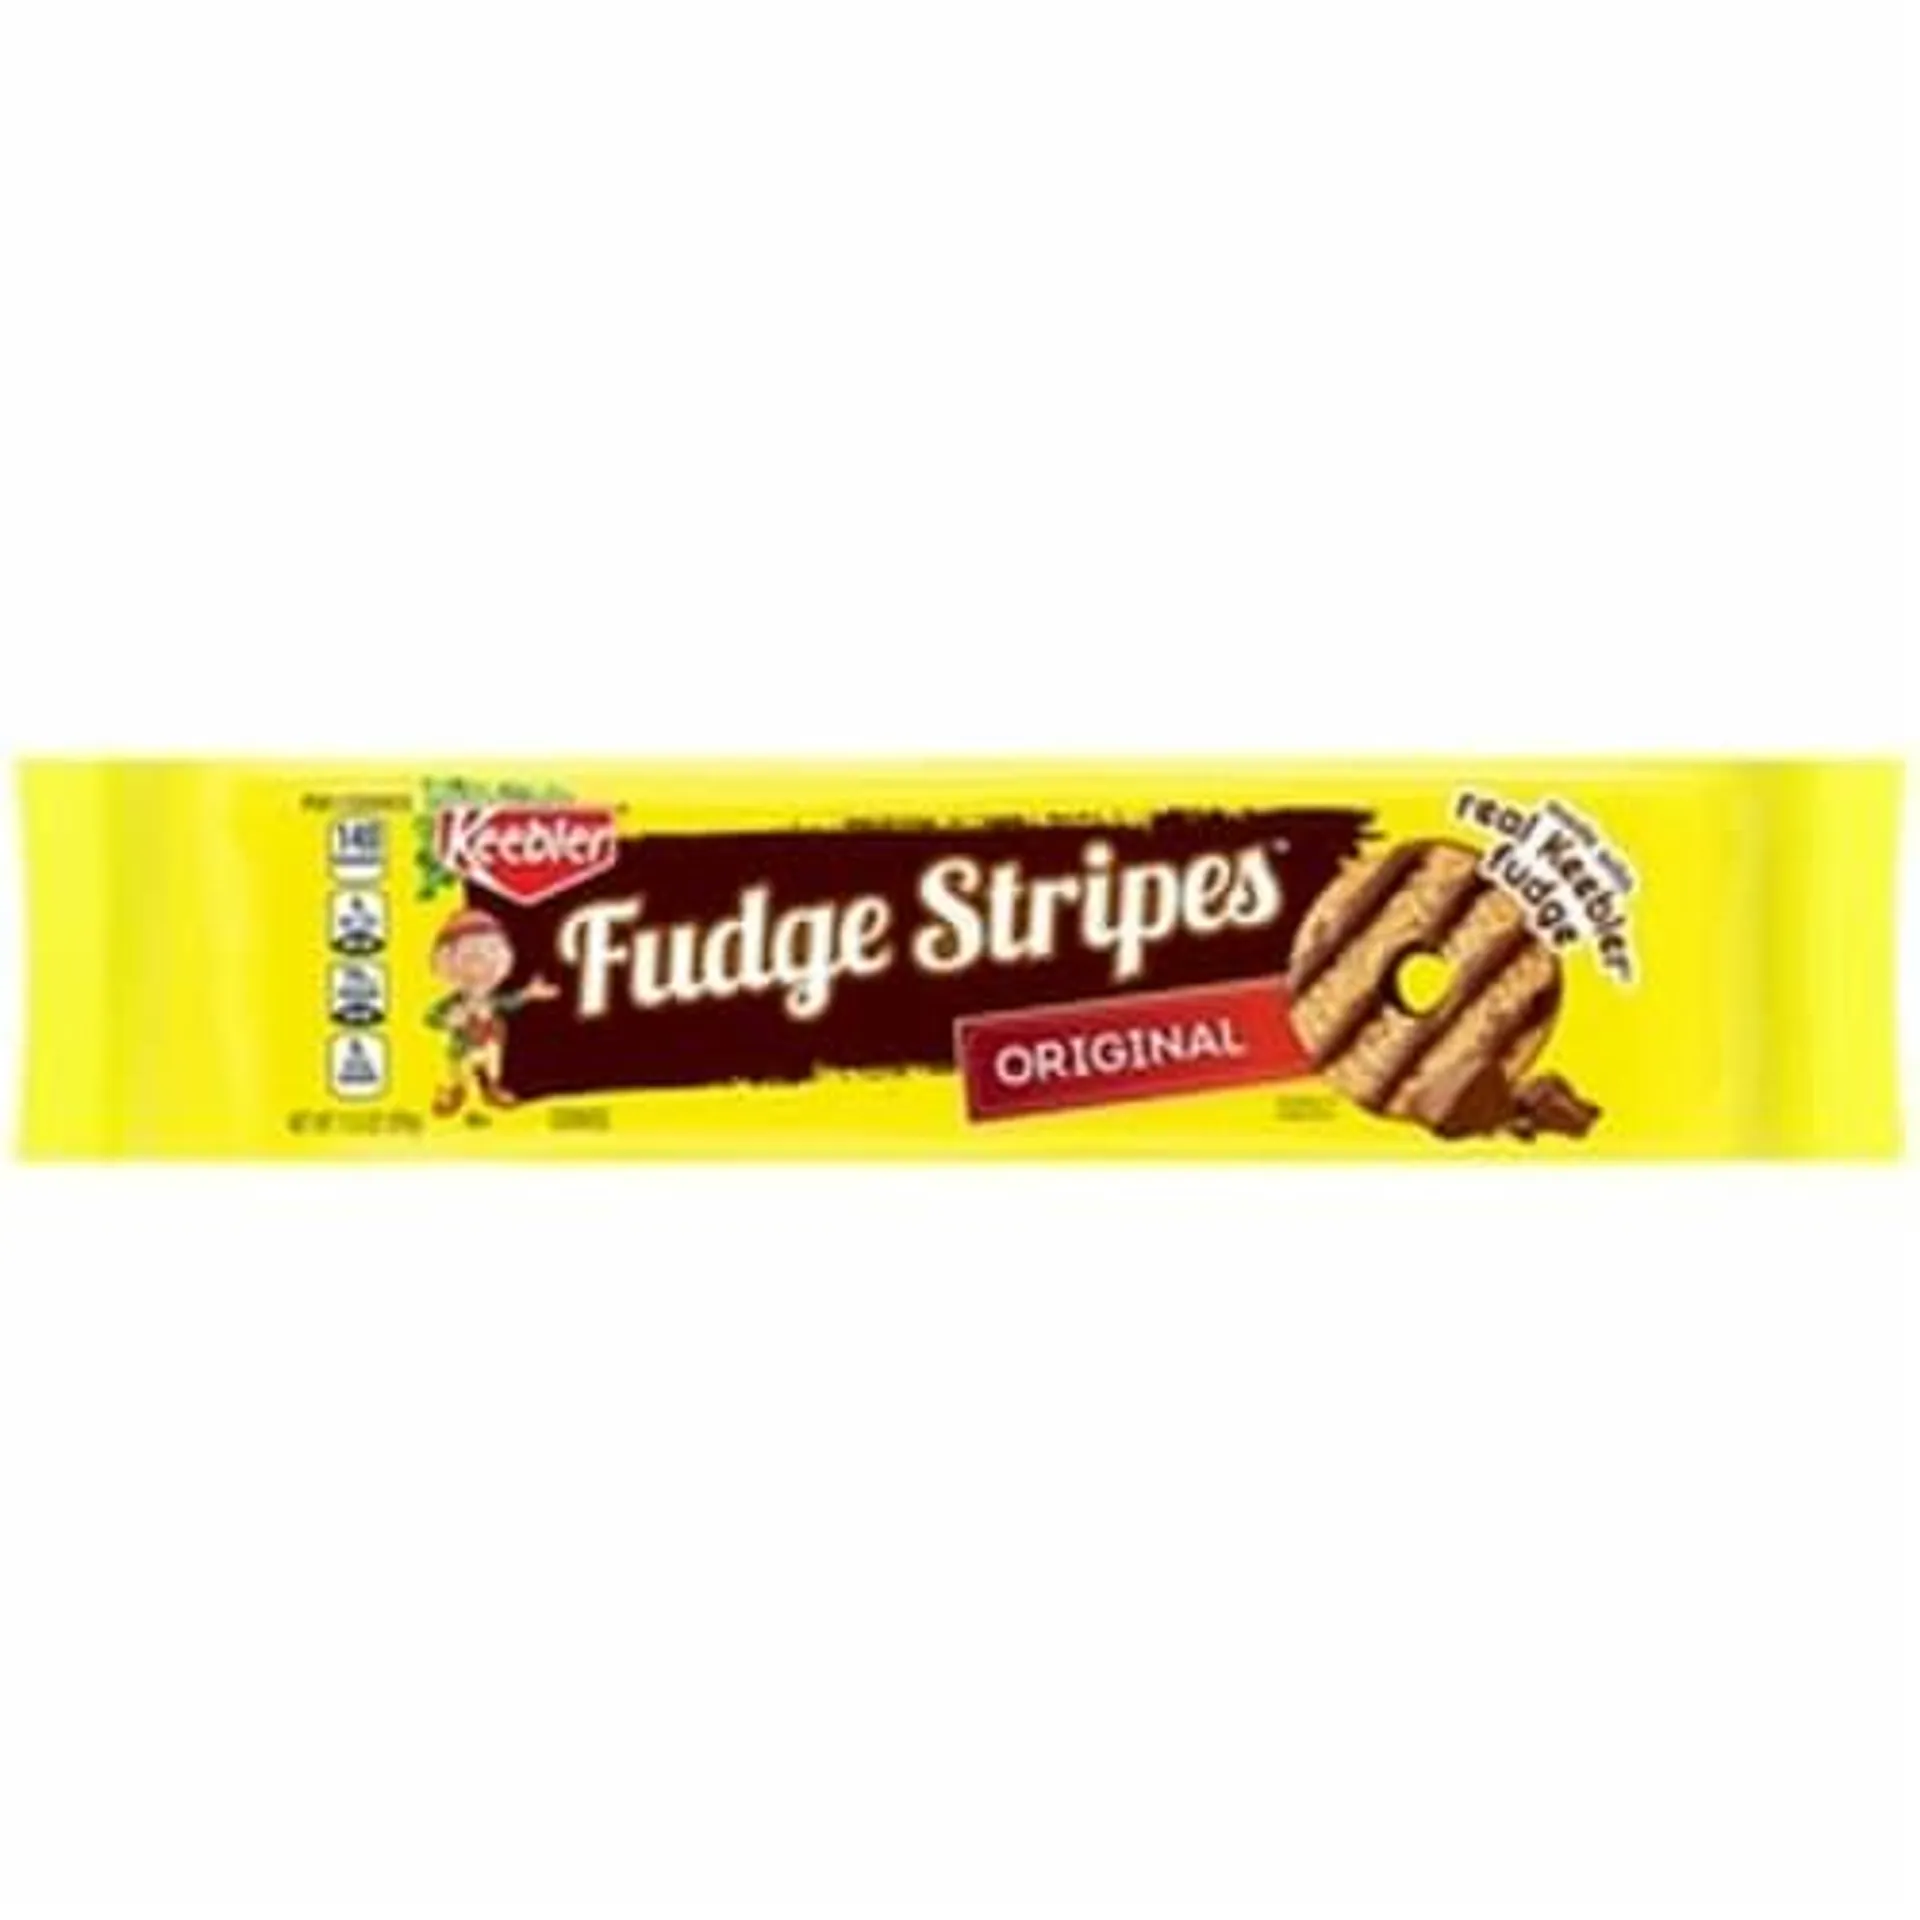 Keebler Fudge Stripes Cookies, Original (Pack of 4)